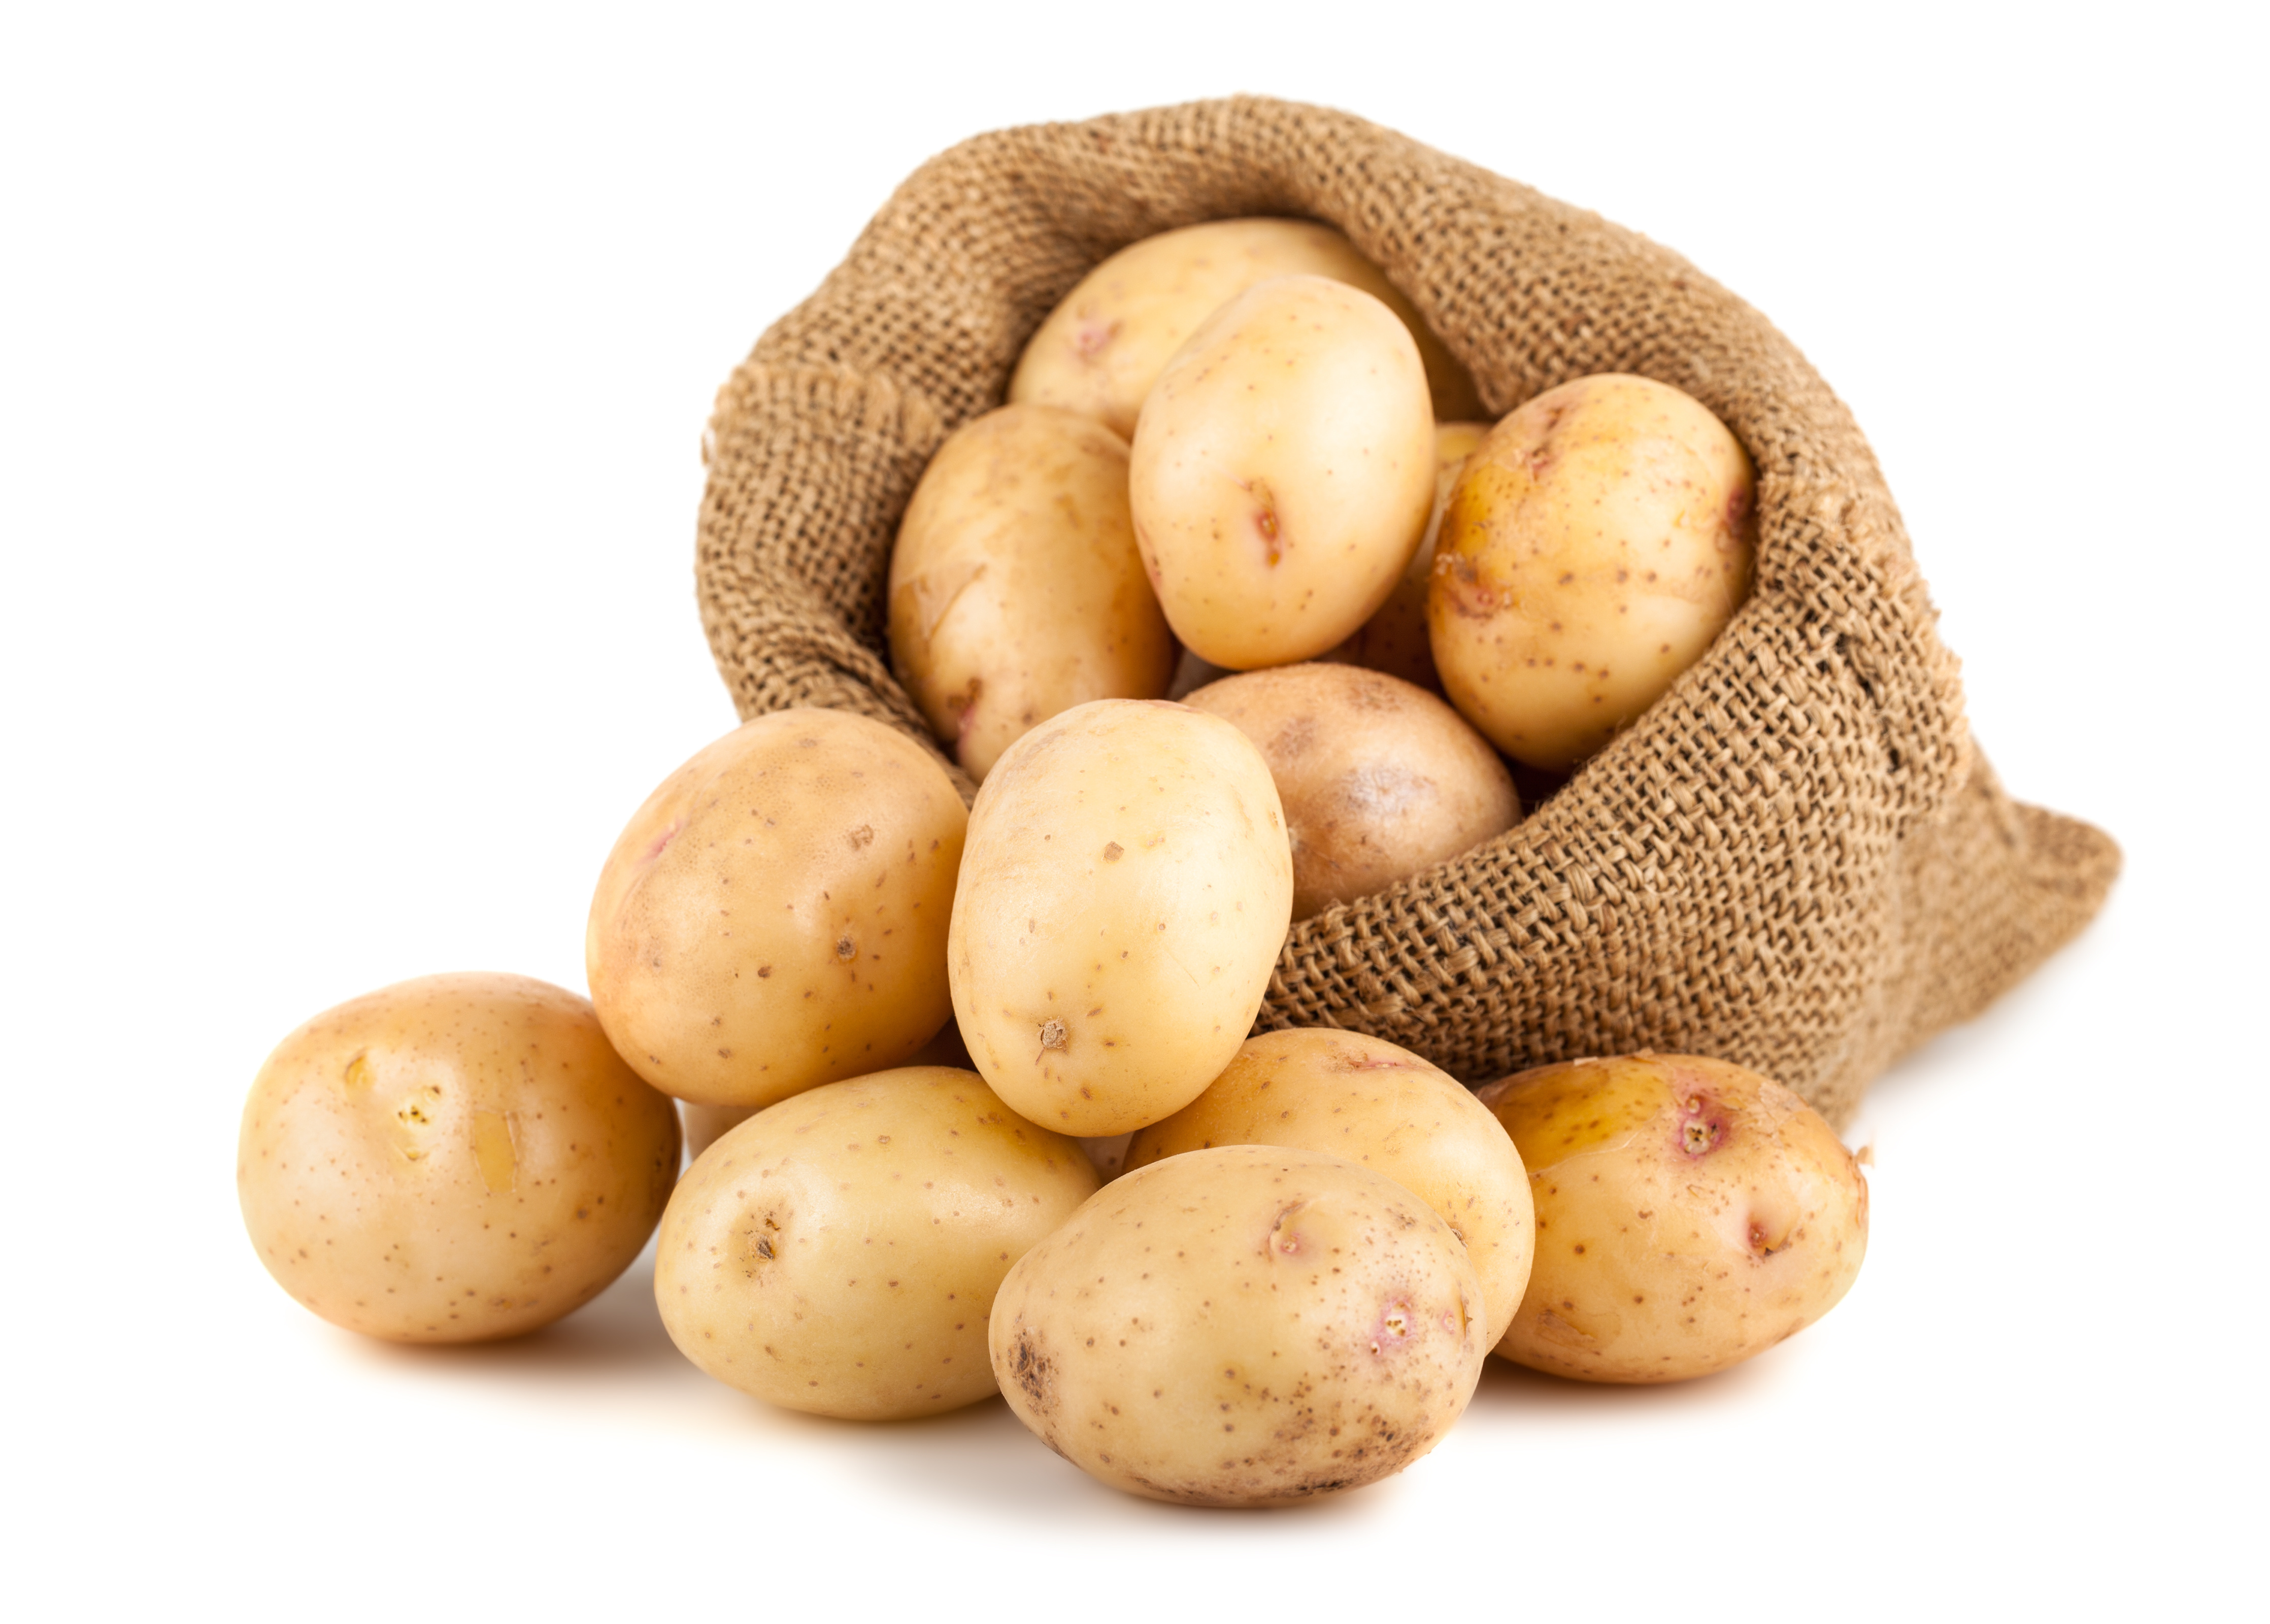 Potatoes picture. Картофель семенной Артемис. Картошка етиштириш. Картофель на белом фоне. Картофель Триумф.